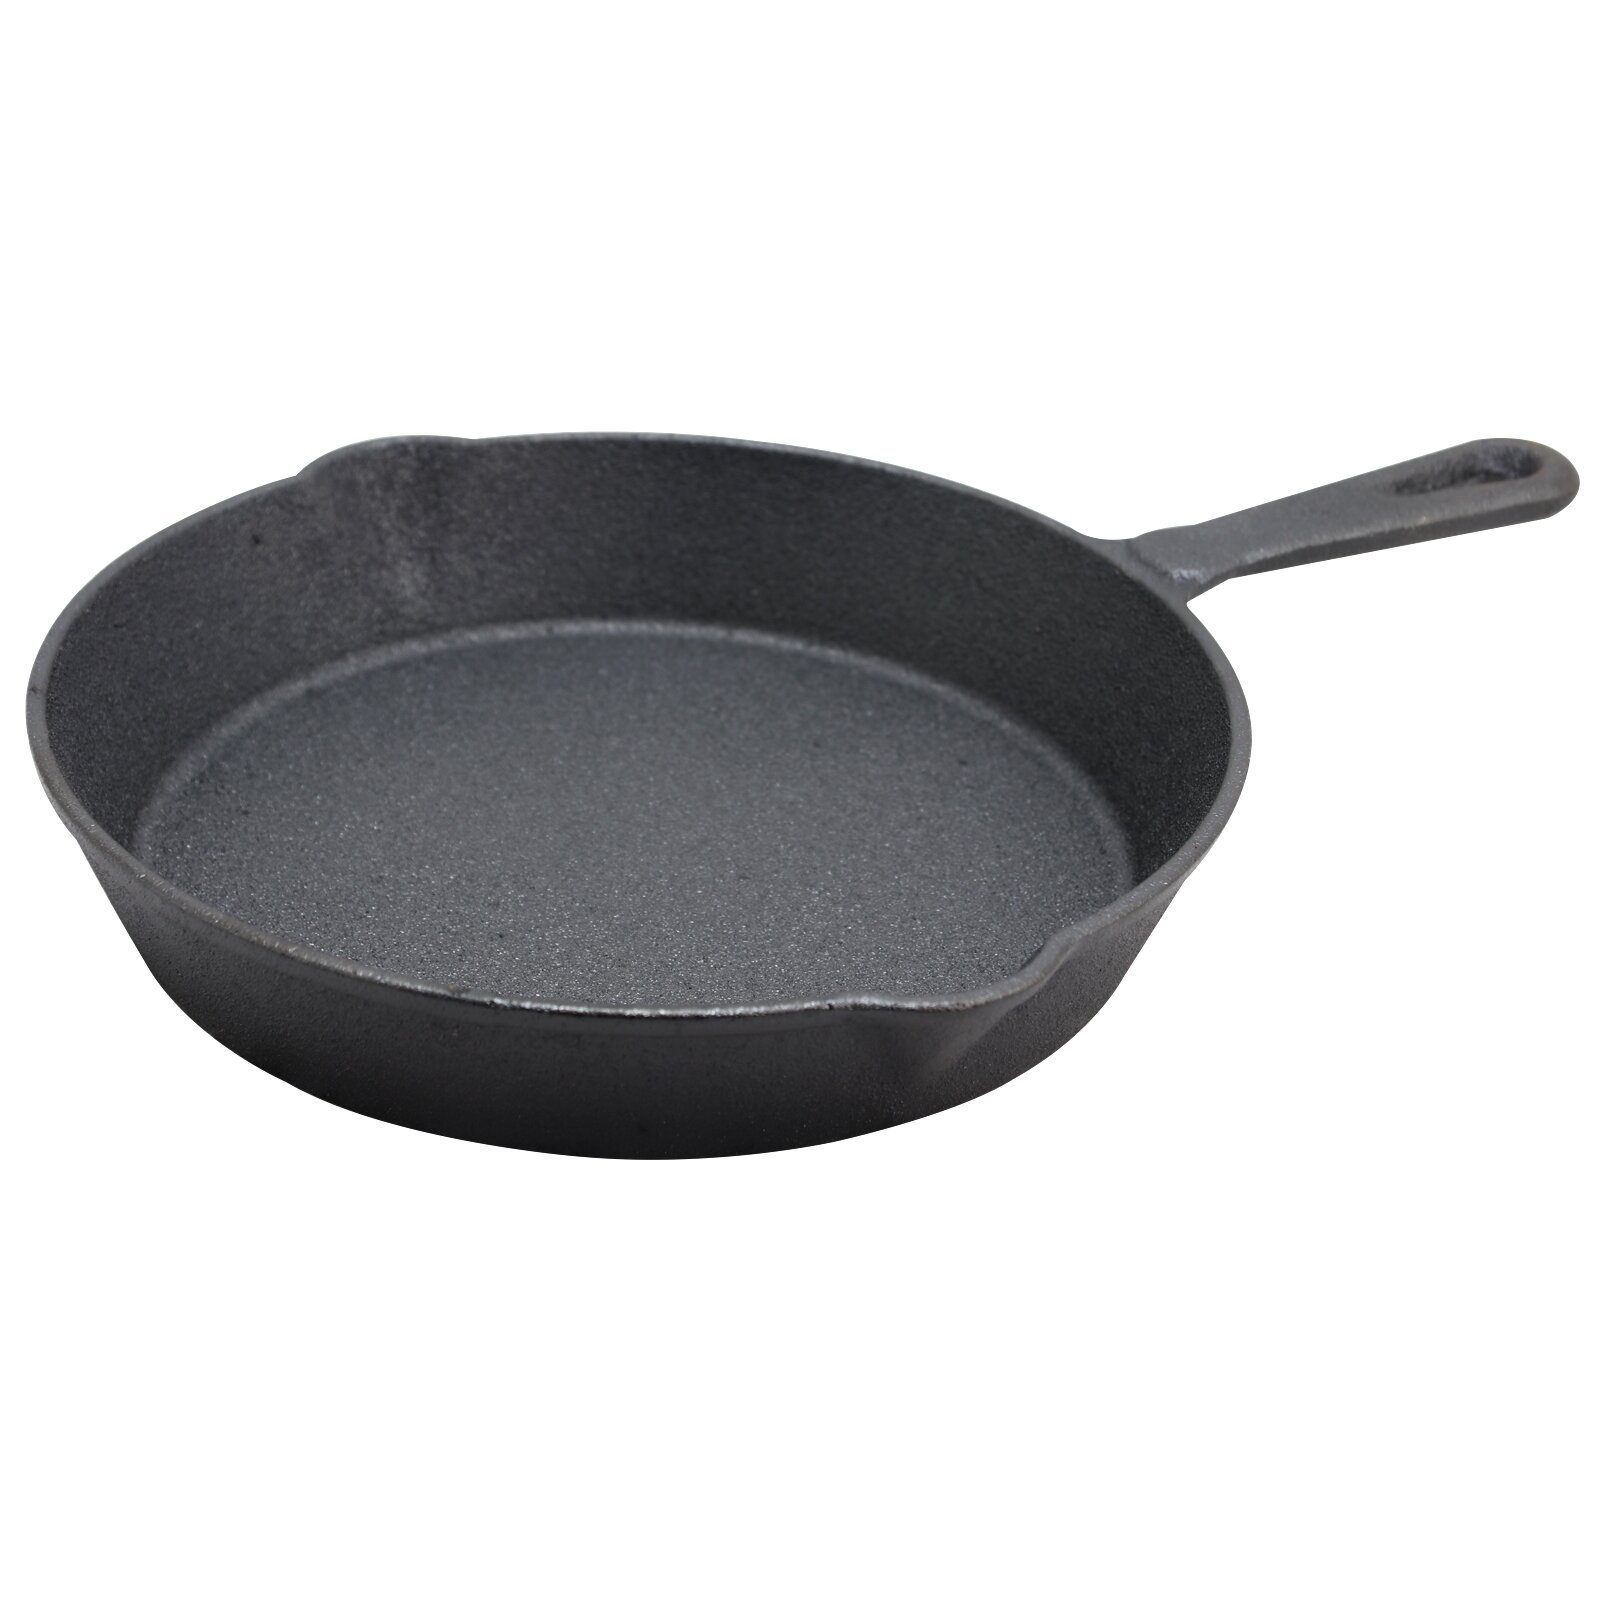 COOKER KING Non stick Frying Pan set, 3Piece Ceramic Pans,8+10+